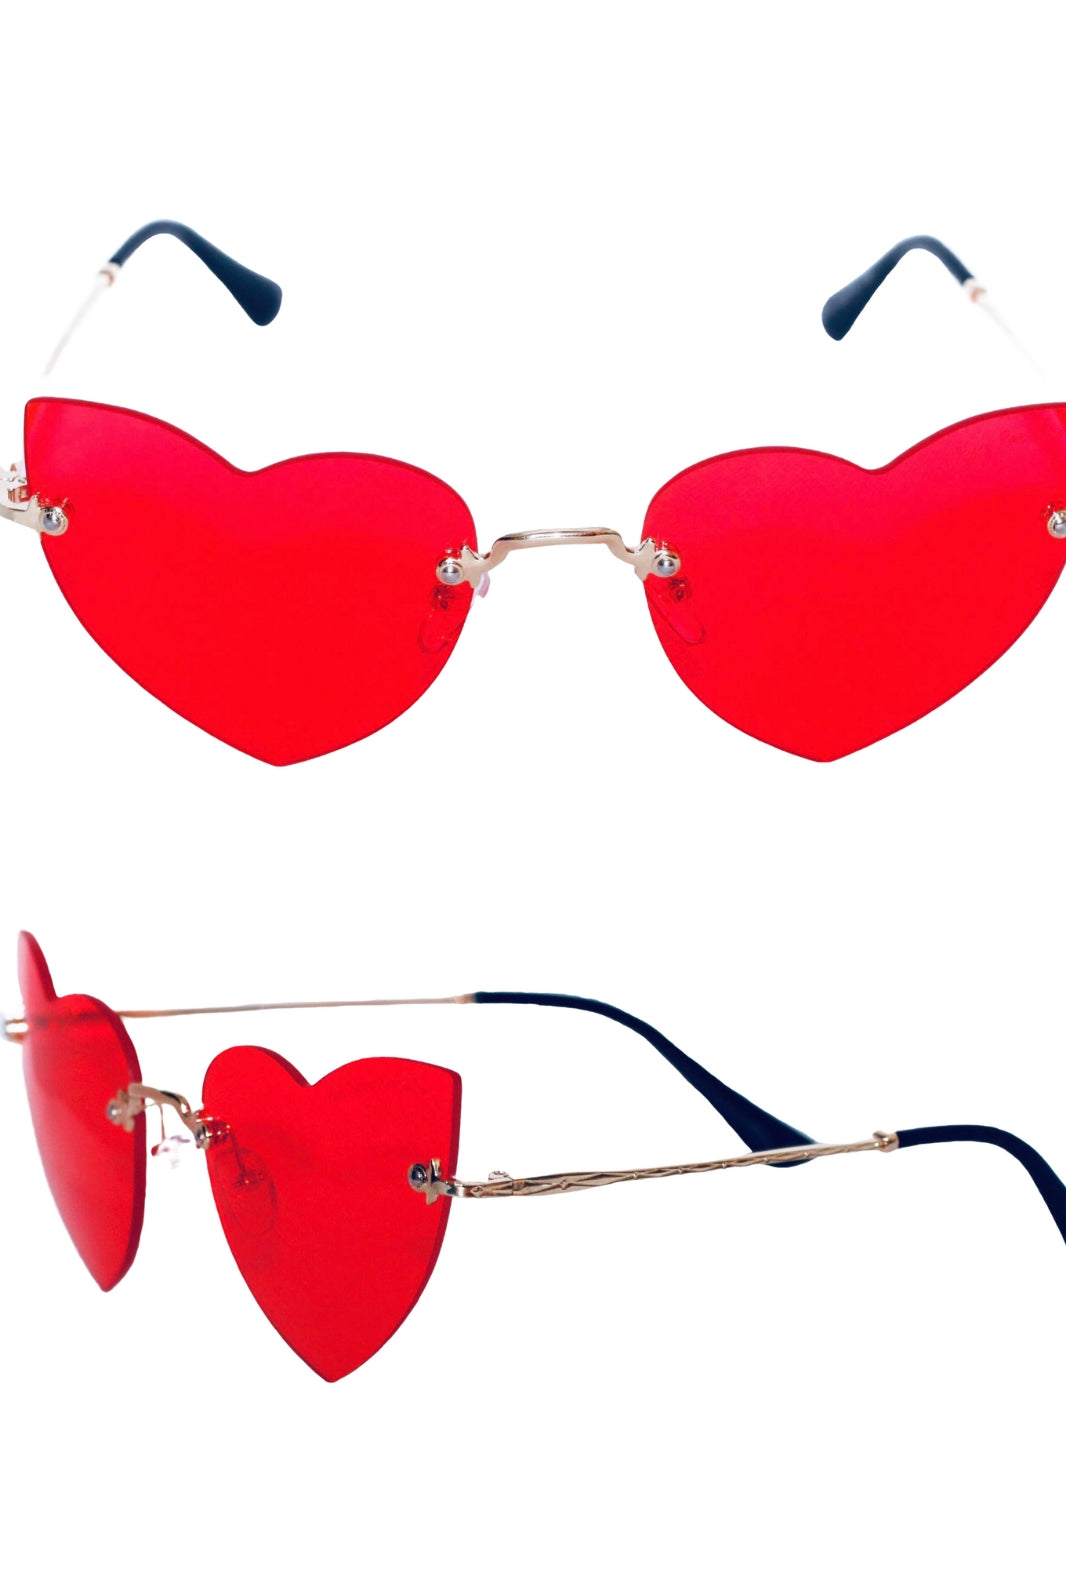 Cat Eye Frameless Love Glasses - Love Glasses Revolution